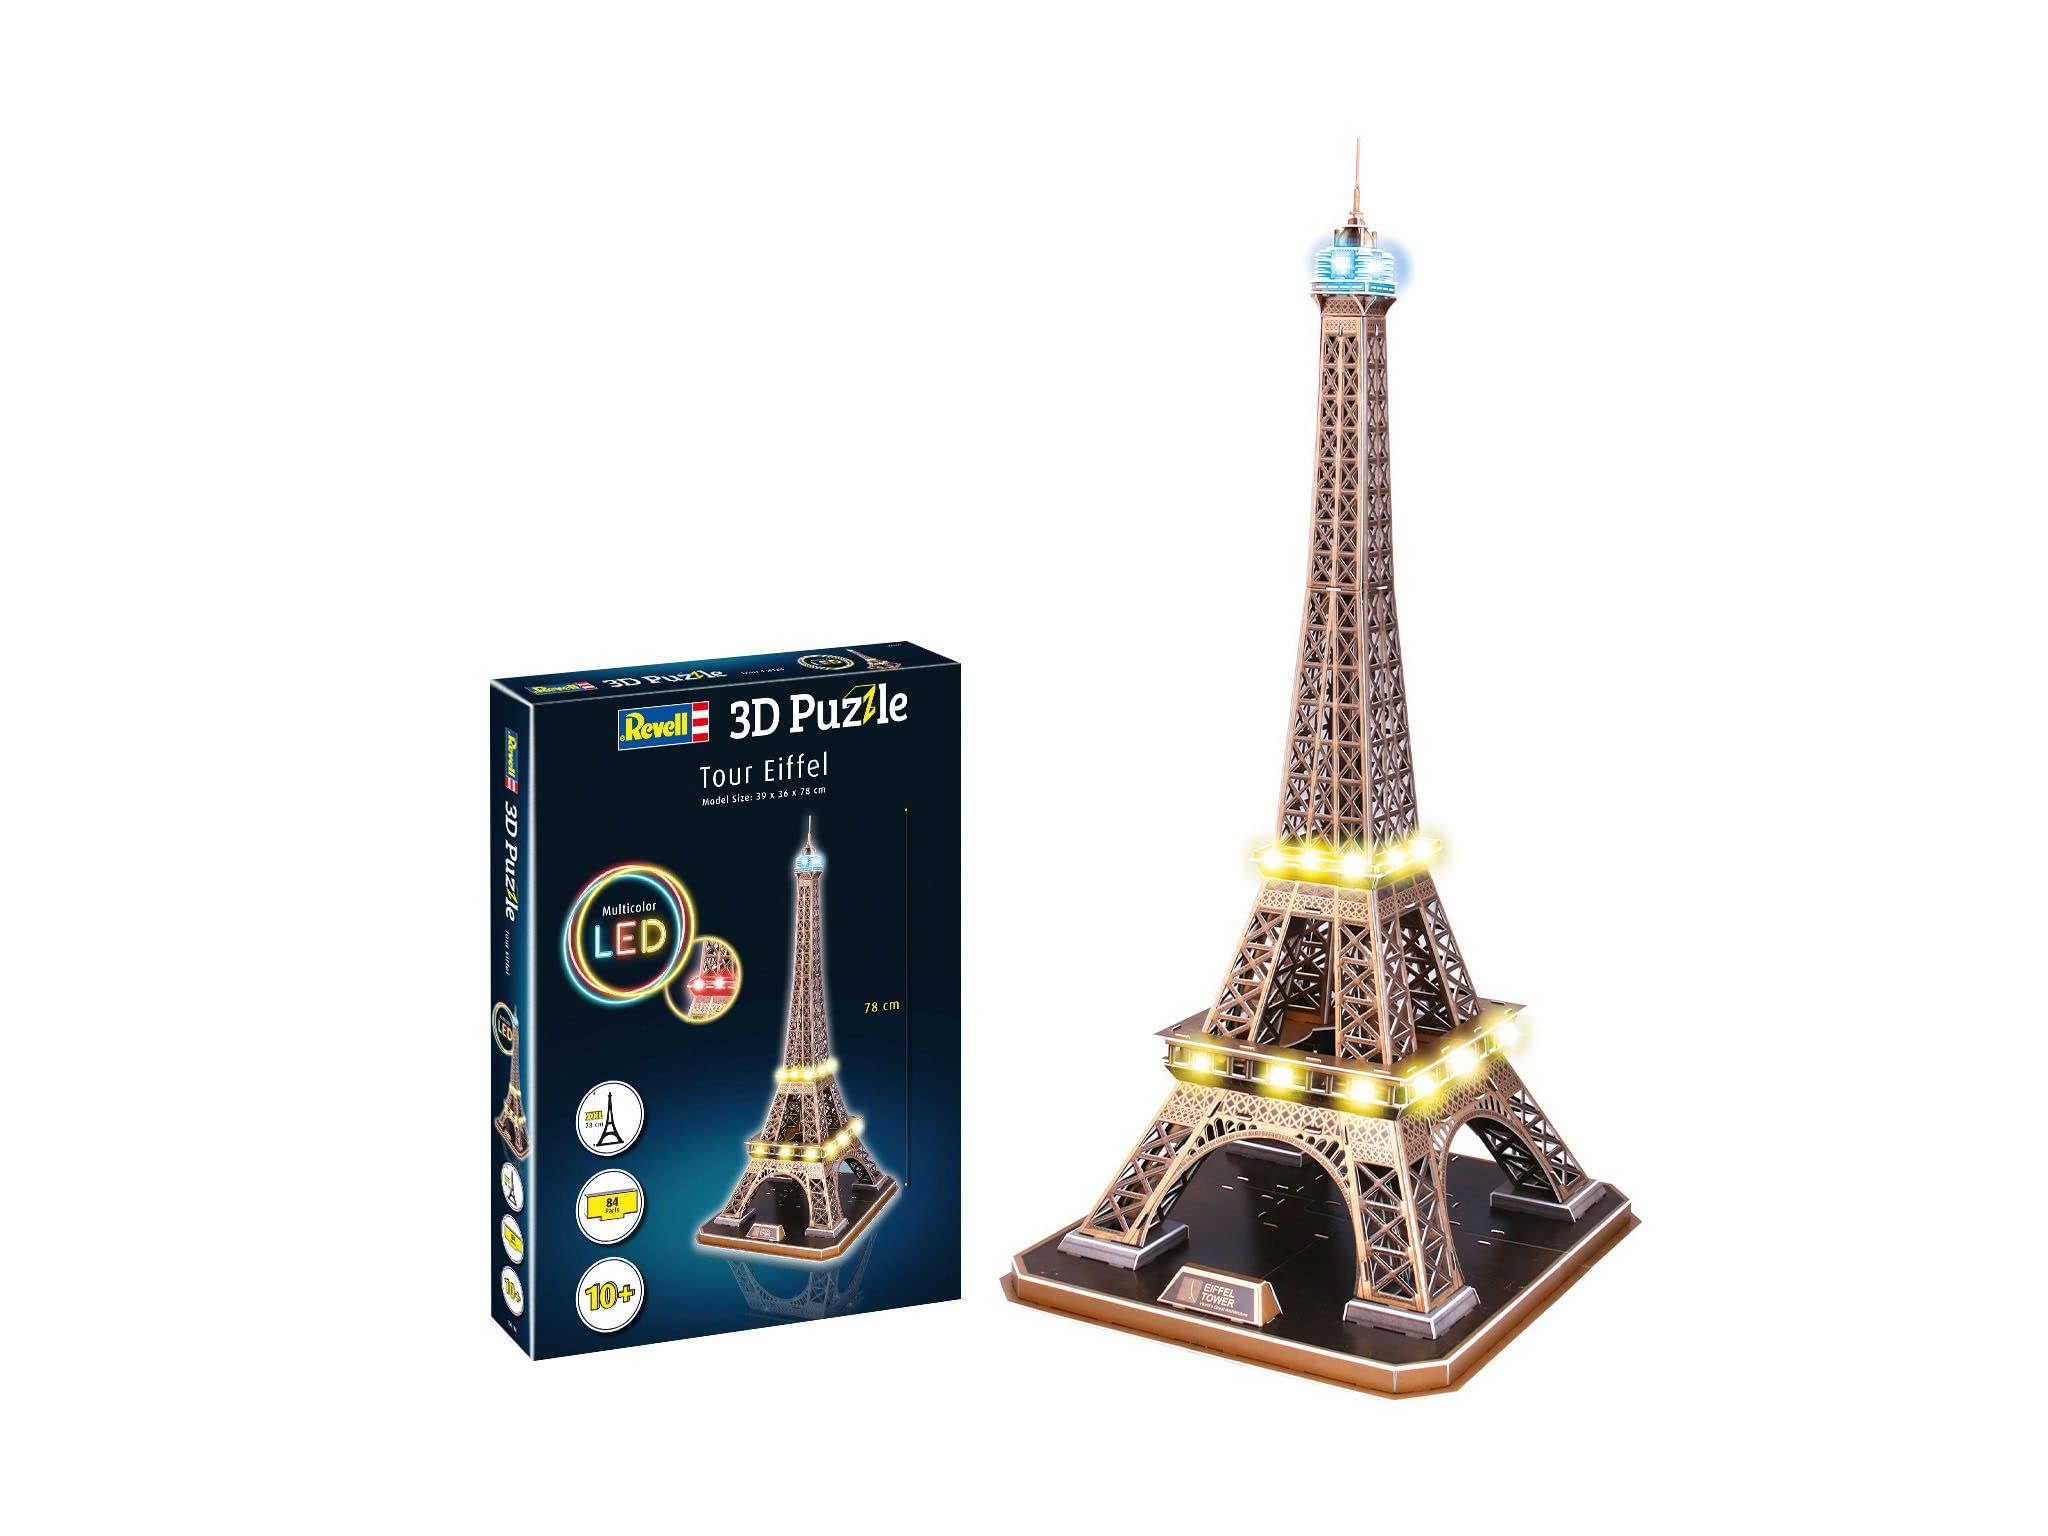 Revell 3D Puzzle 00150 I Eiffelturm Paris I 84 Teile I 4 Stunden Bauspaß für Kinder und Erwachsene I ab 10 Jahren I Mit LED Beleuchtung für einen authentische Präsentation